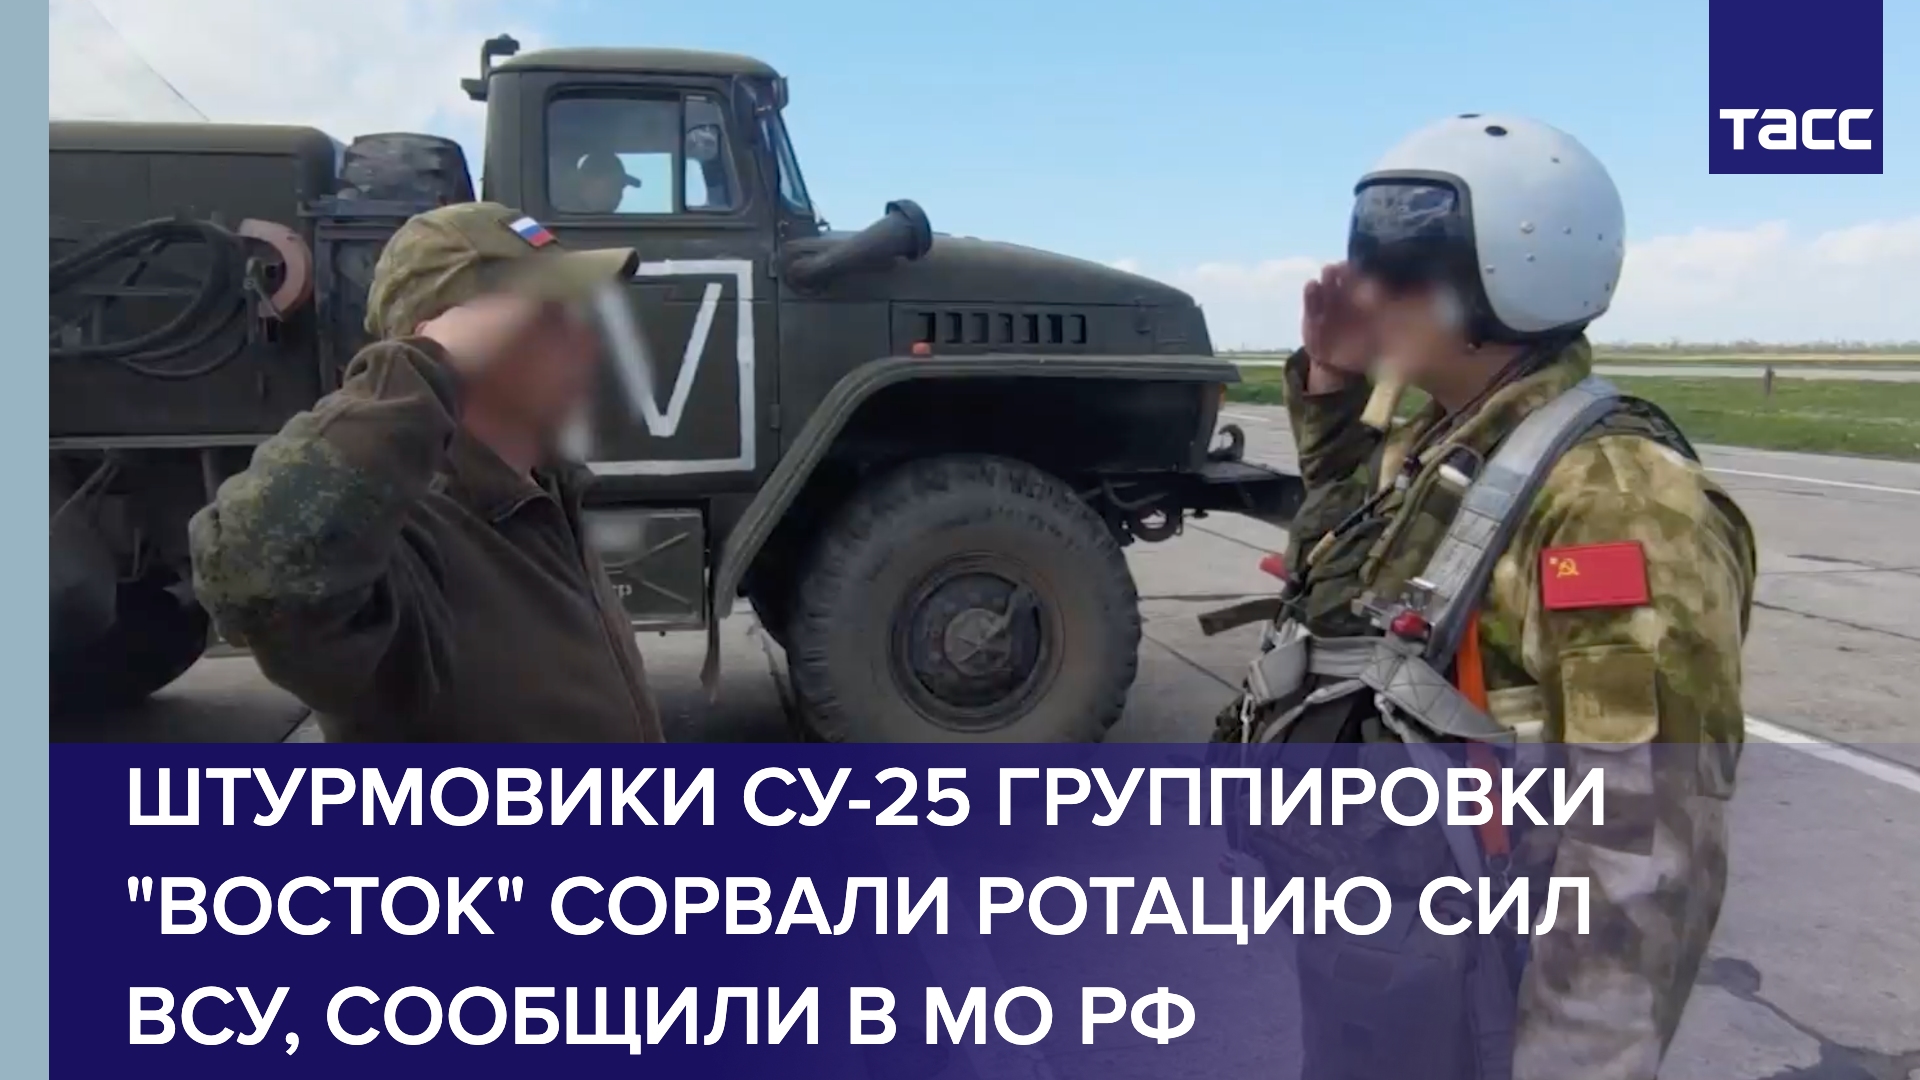 Штурмовики Су-25 группировки "Восток" сорвали ротацию сил ВСУ, сообщили в МО РФ